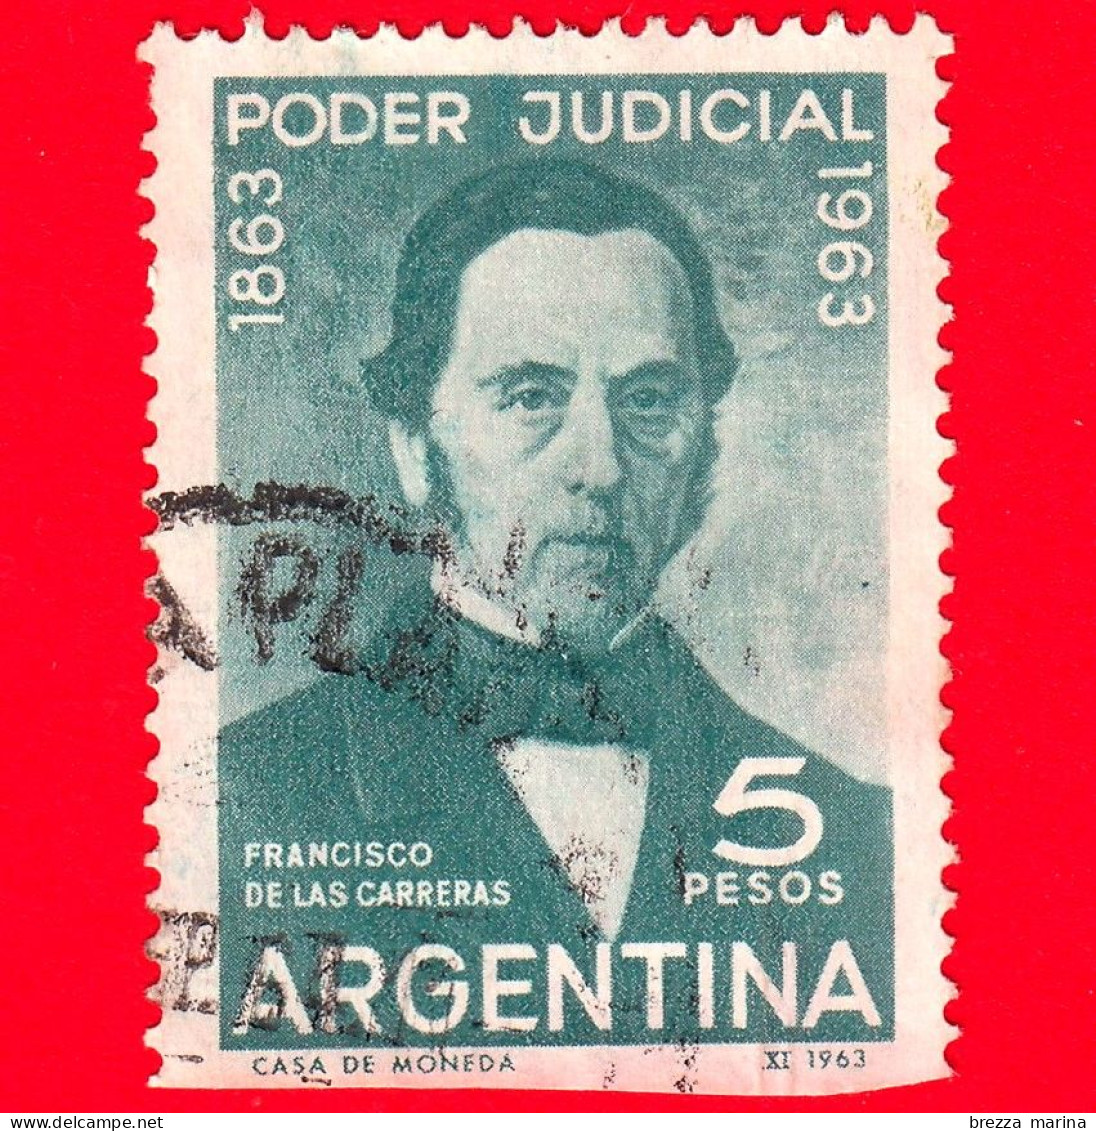 ARGENTINA - Usato - 1963 - Centenario Della Magistratura Argentina - F. De Las Carreras - 5 - Vedi ... - Used Stamps